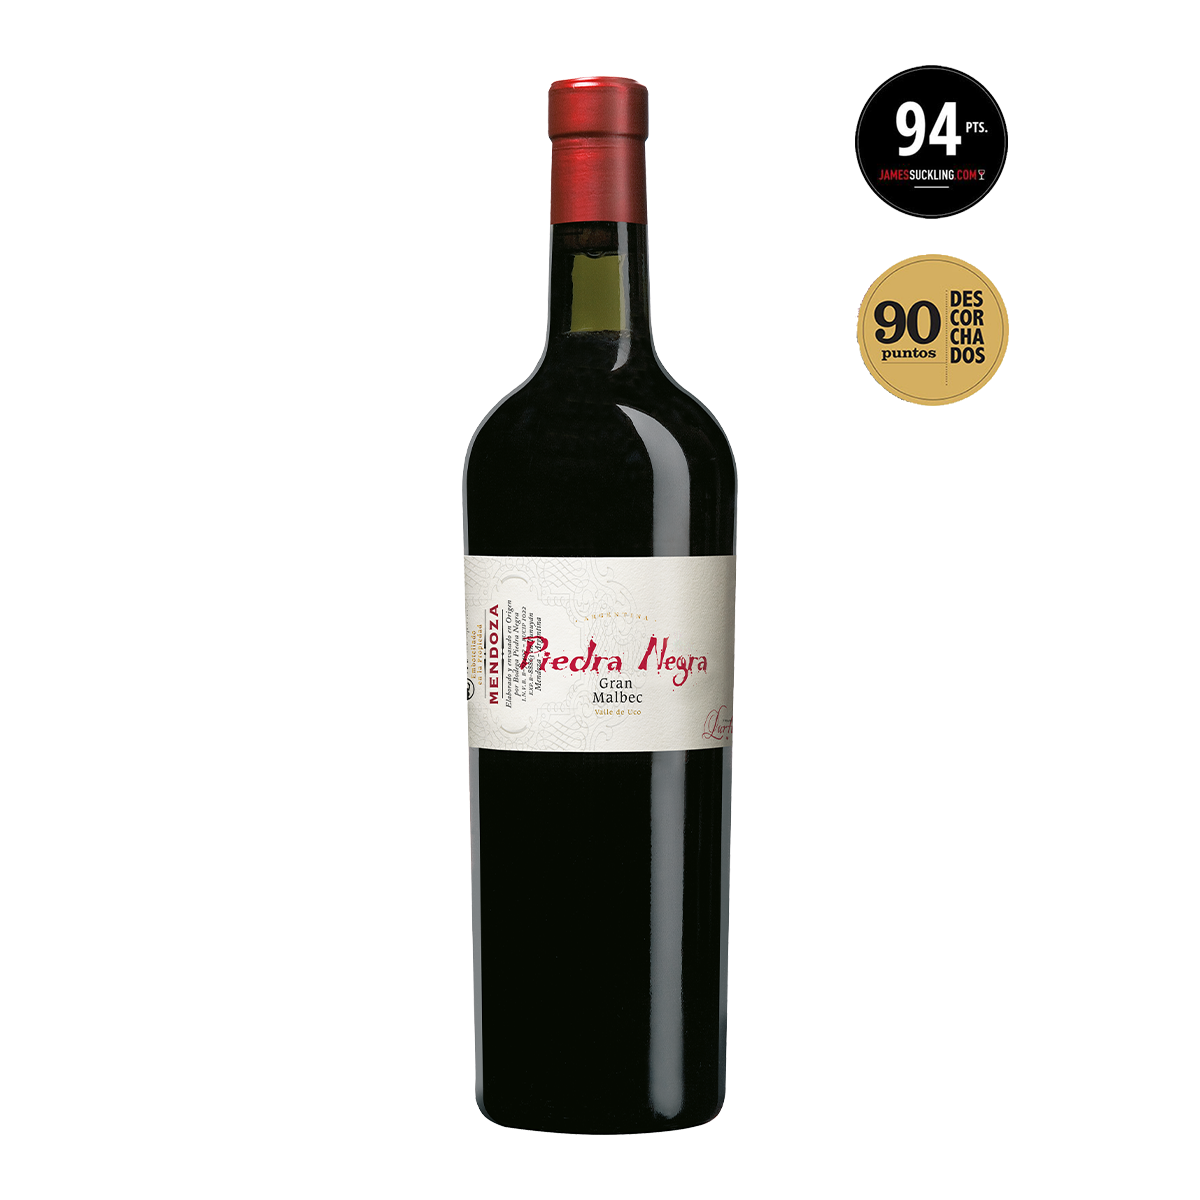 ARL1302 阿根廷門多薩魯頓黑寶石莊園大馬爾貝克干紅酒 Piedra Negra Gran Malbec, Valle de Uco-Mendoza